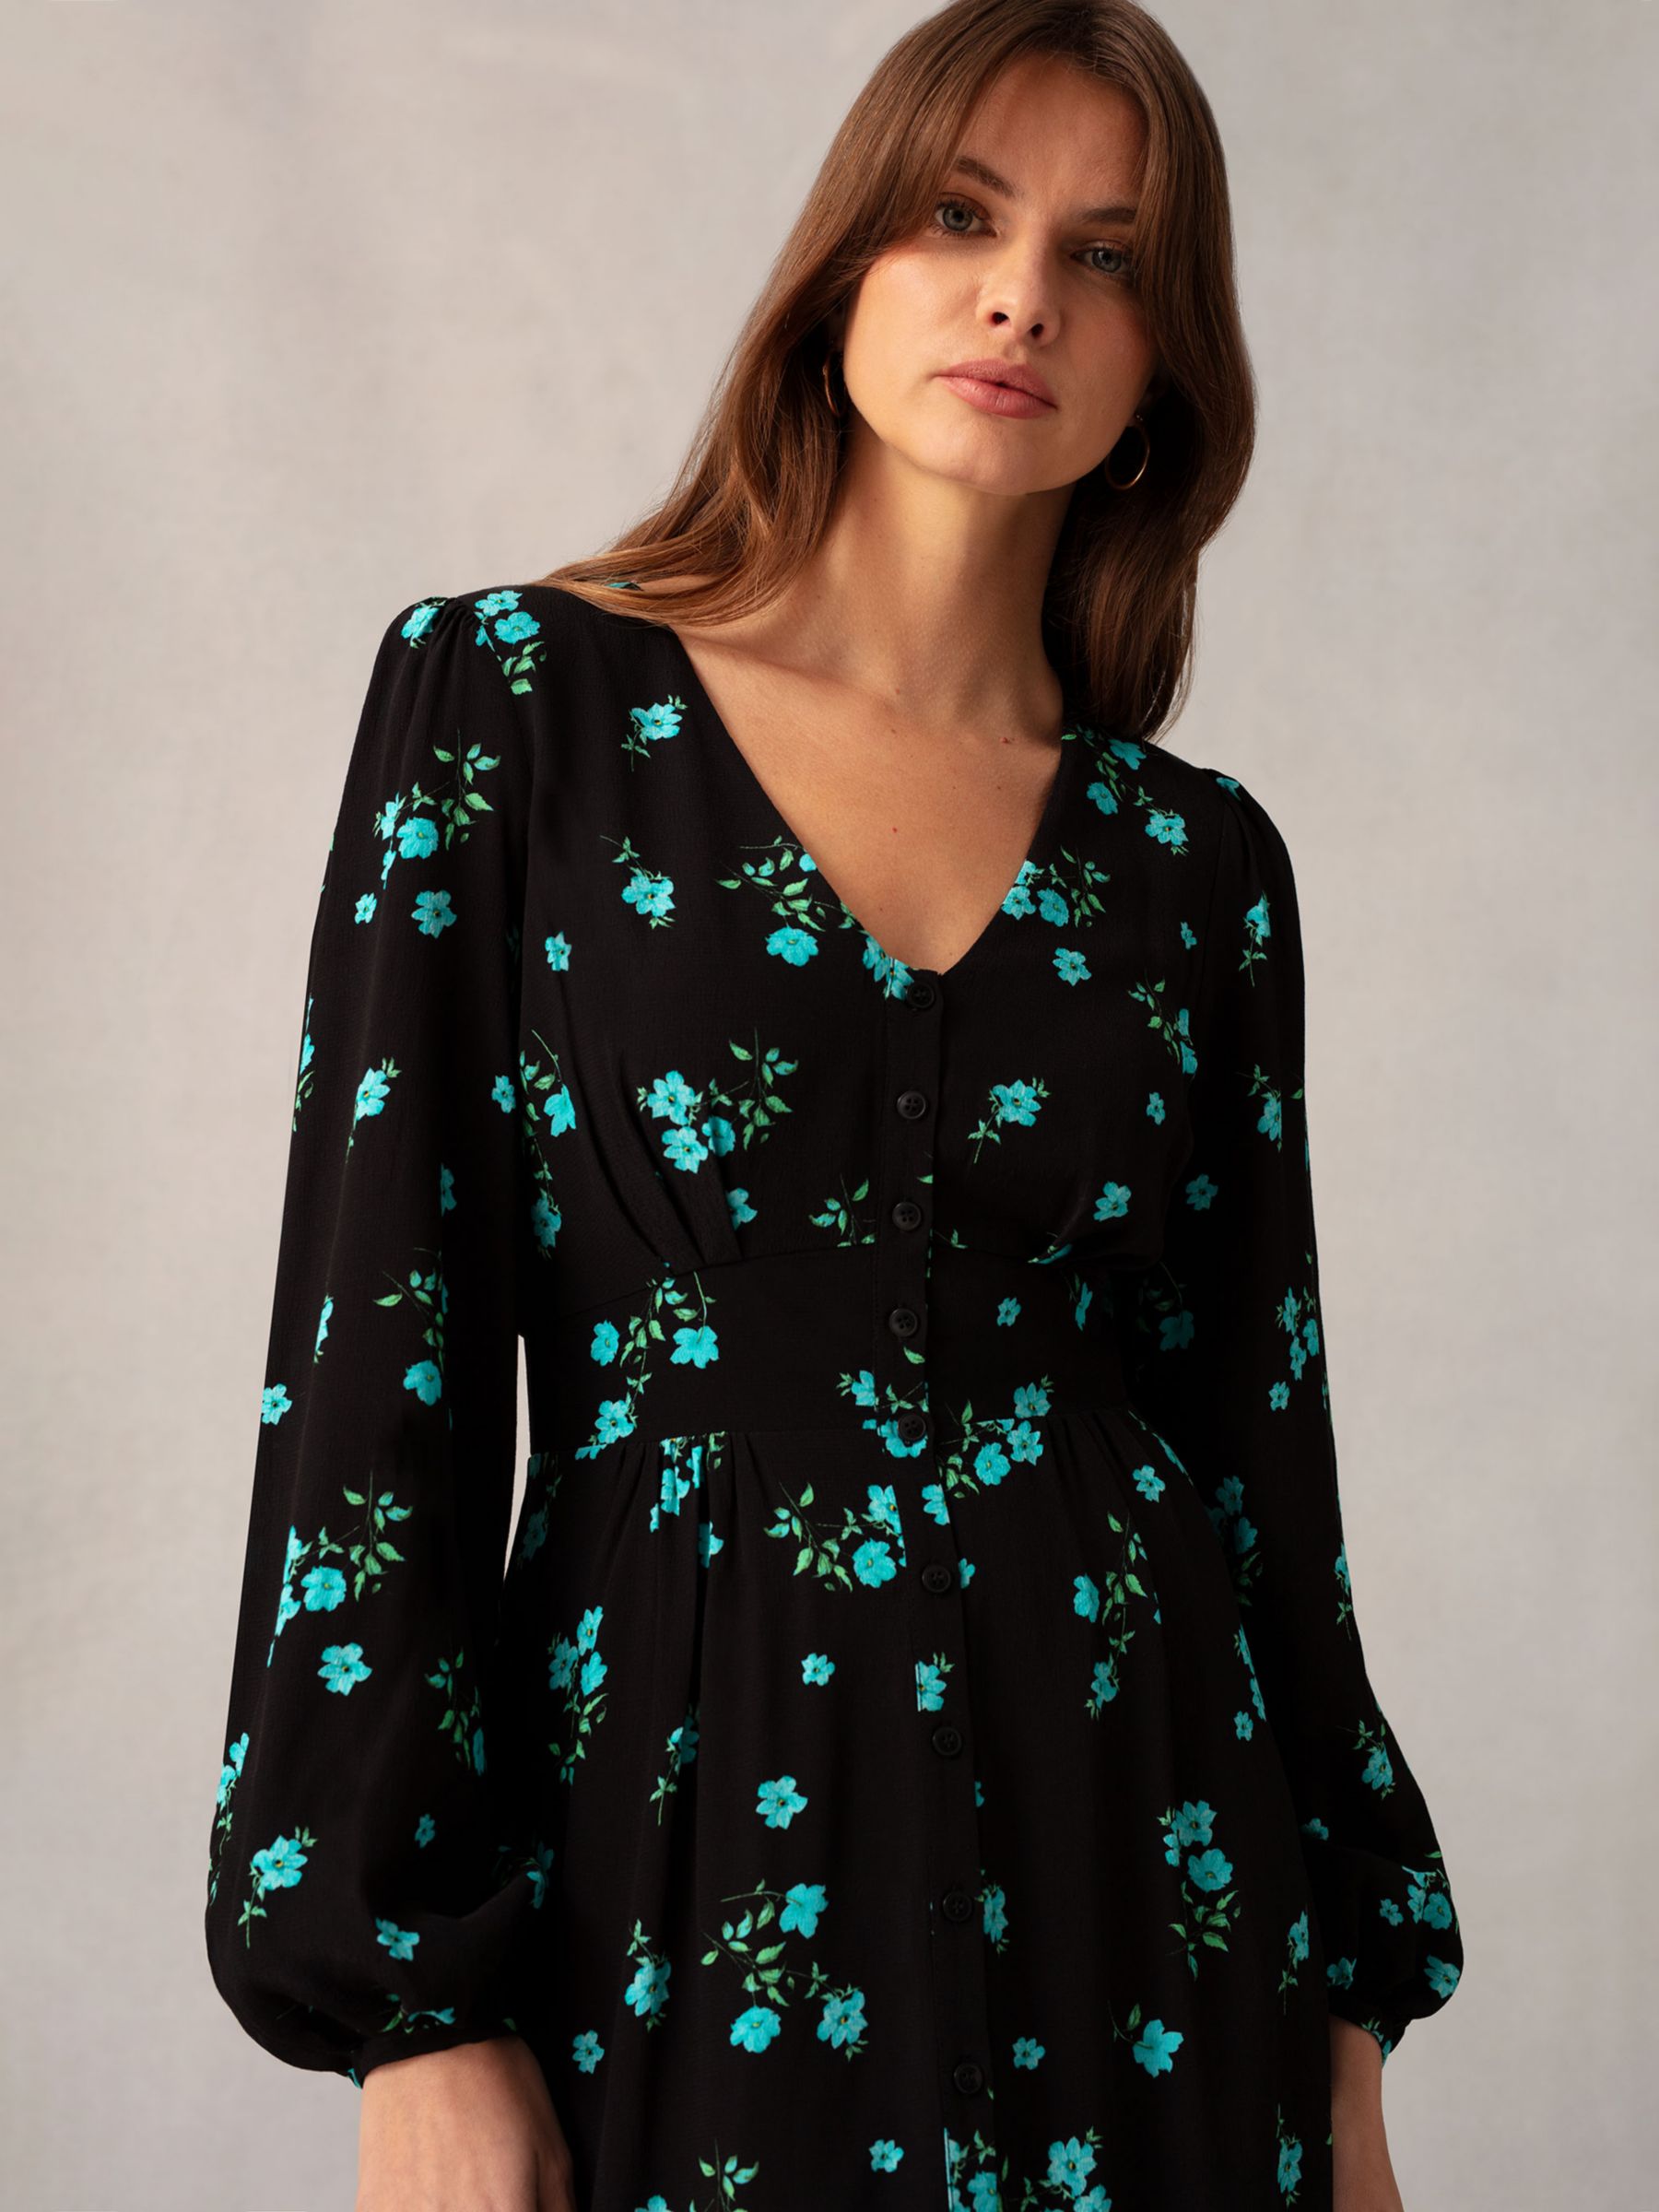 Ro&Zo Floral Cluster Print Midi Dress, Black/Multi, 14